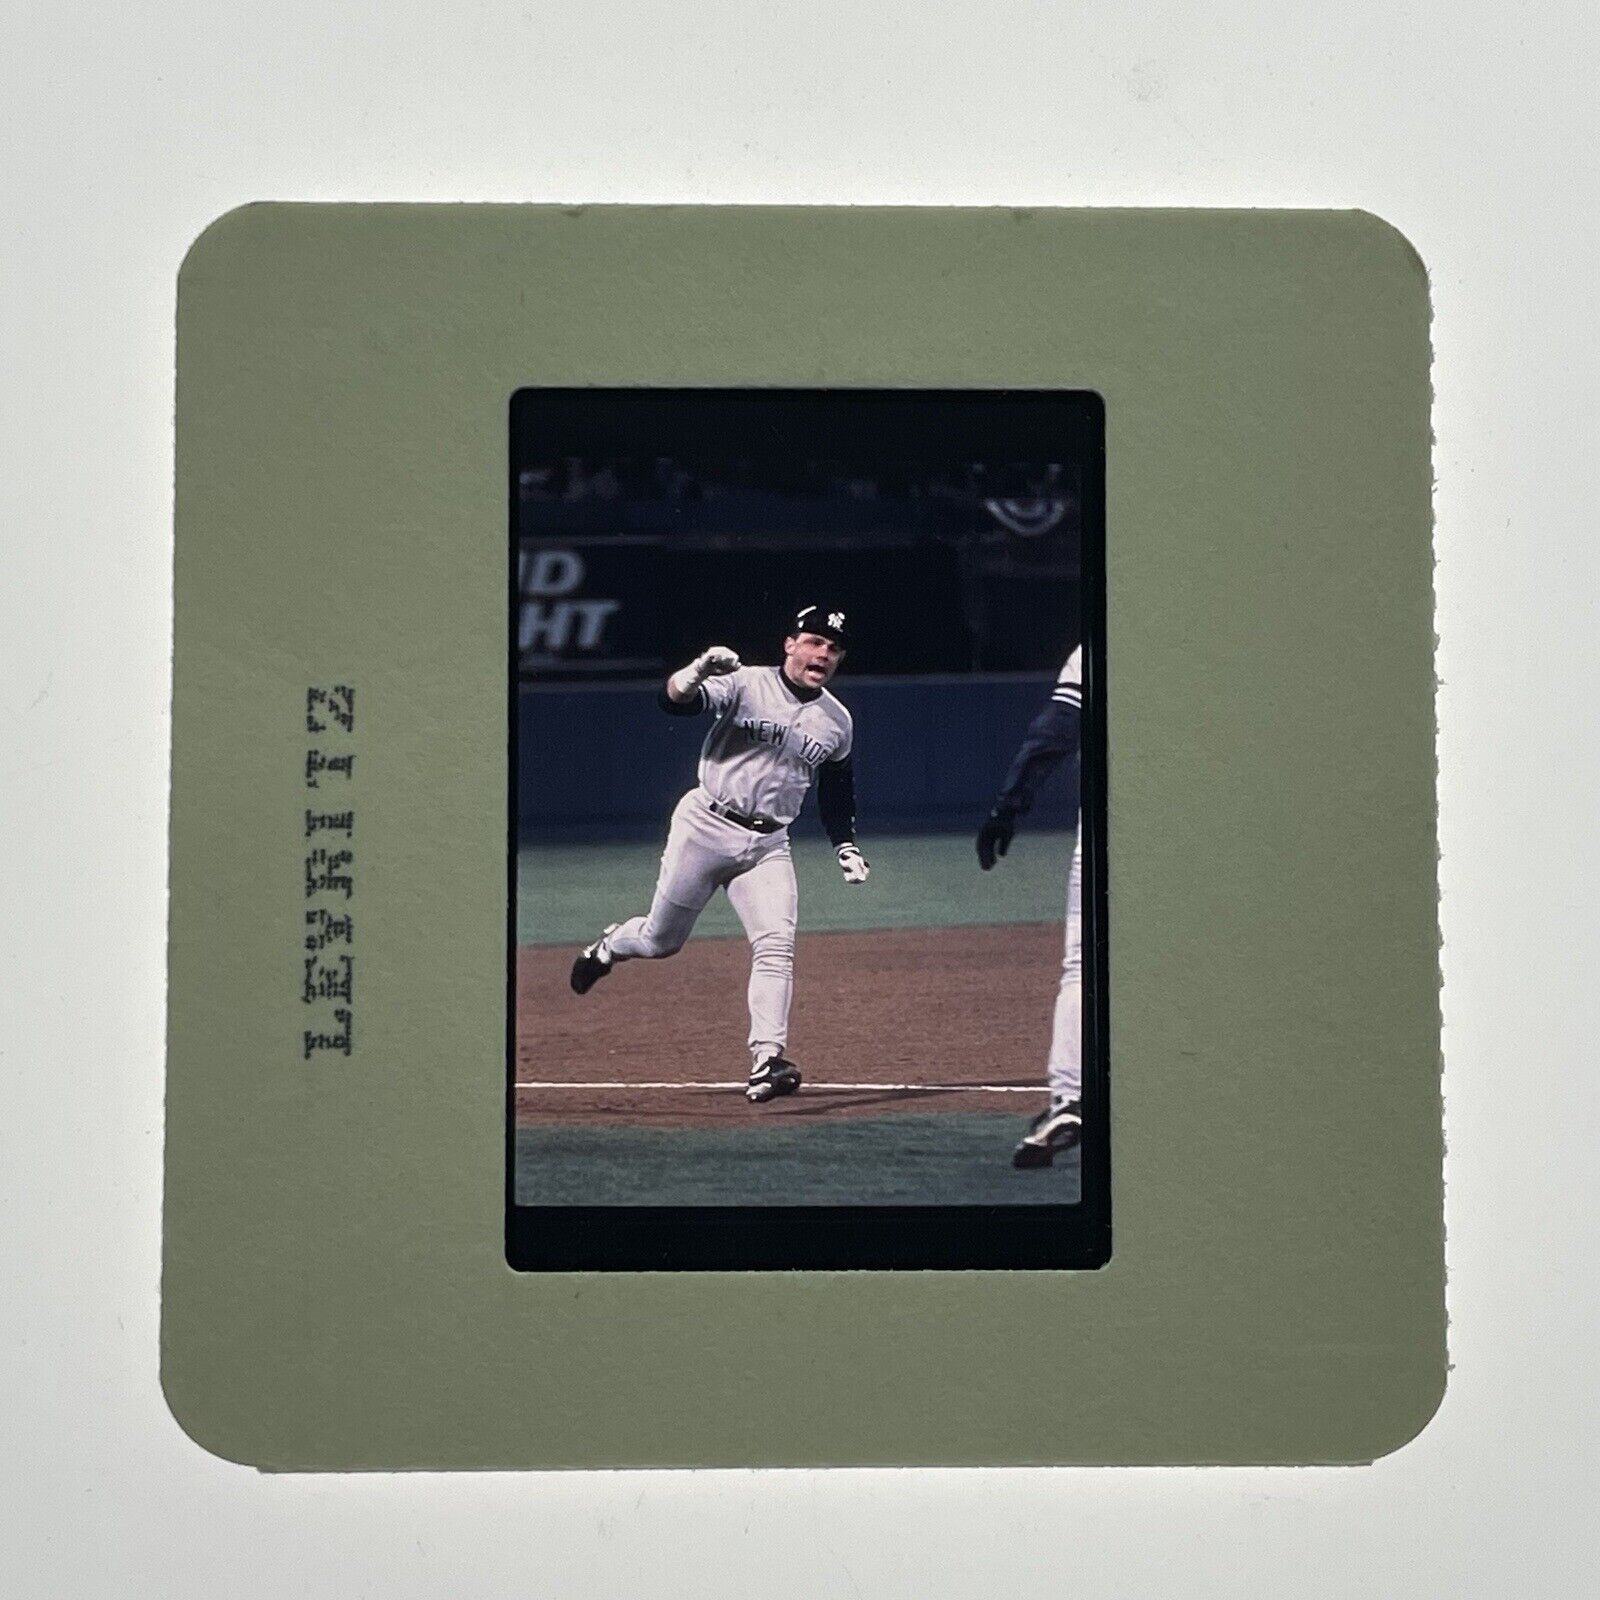 Jim Leyritz USA Baseball New York Yankees Sports S35305 SD15 35mm Slide